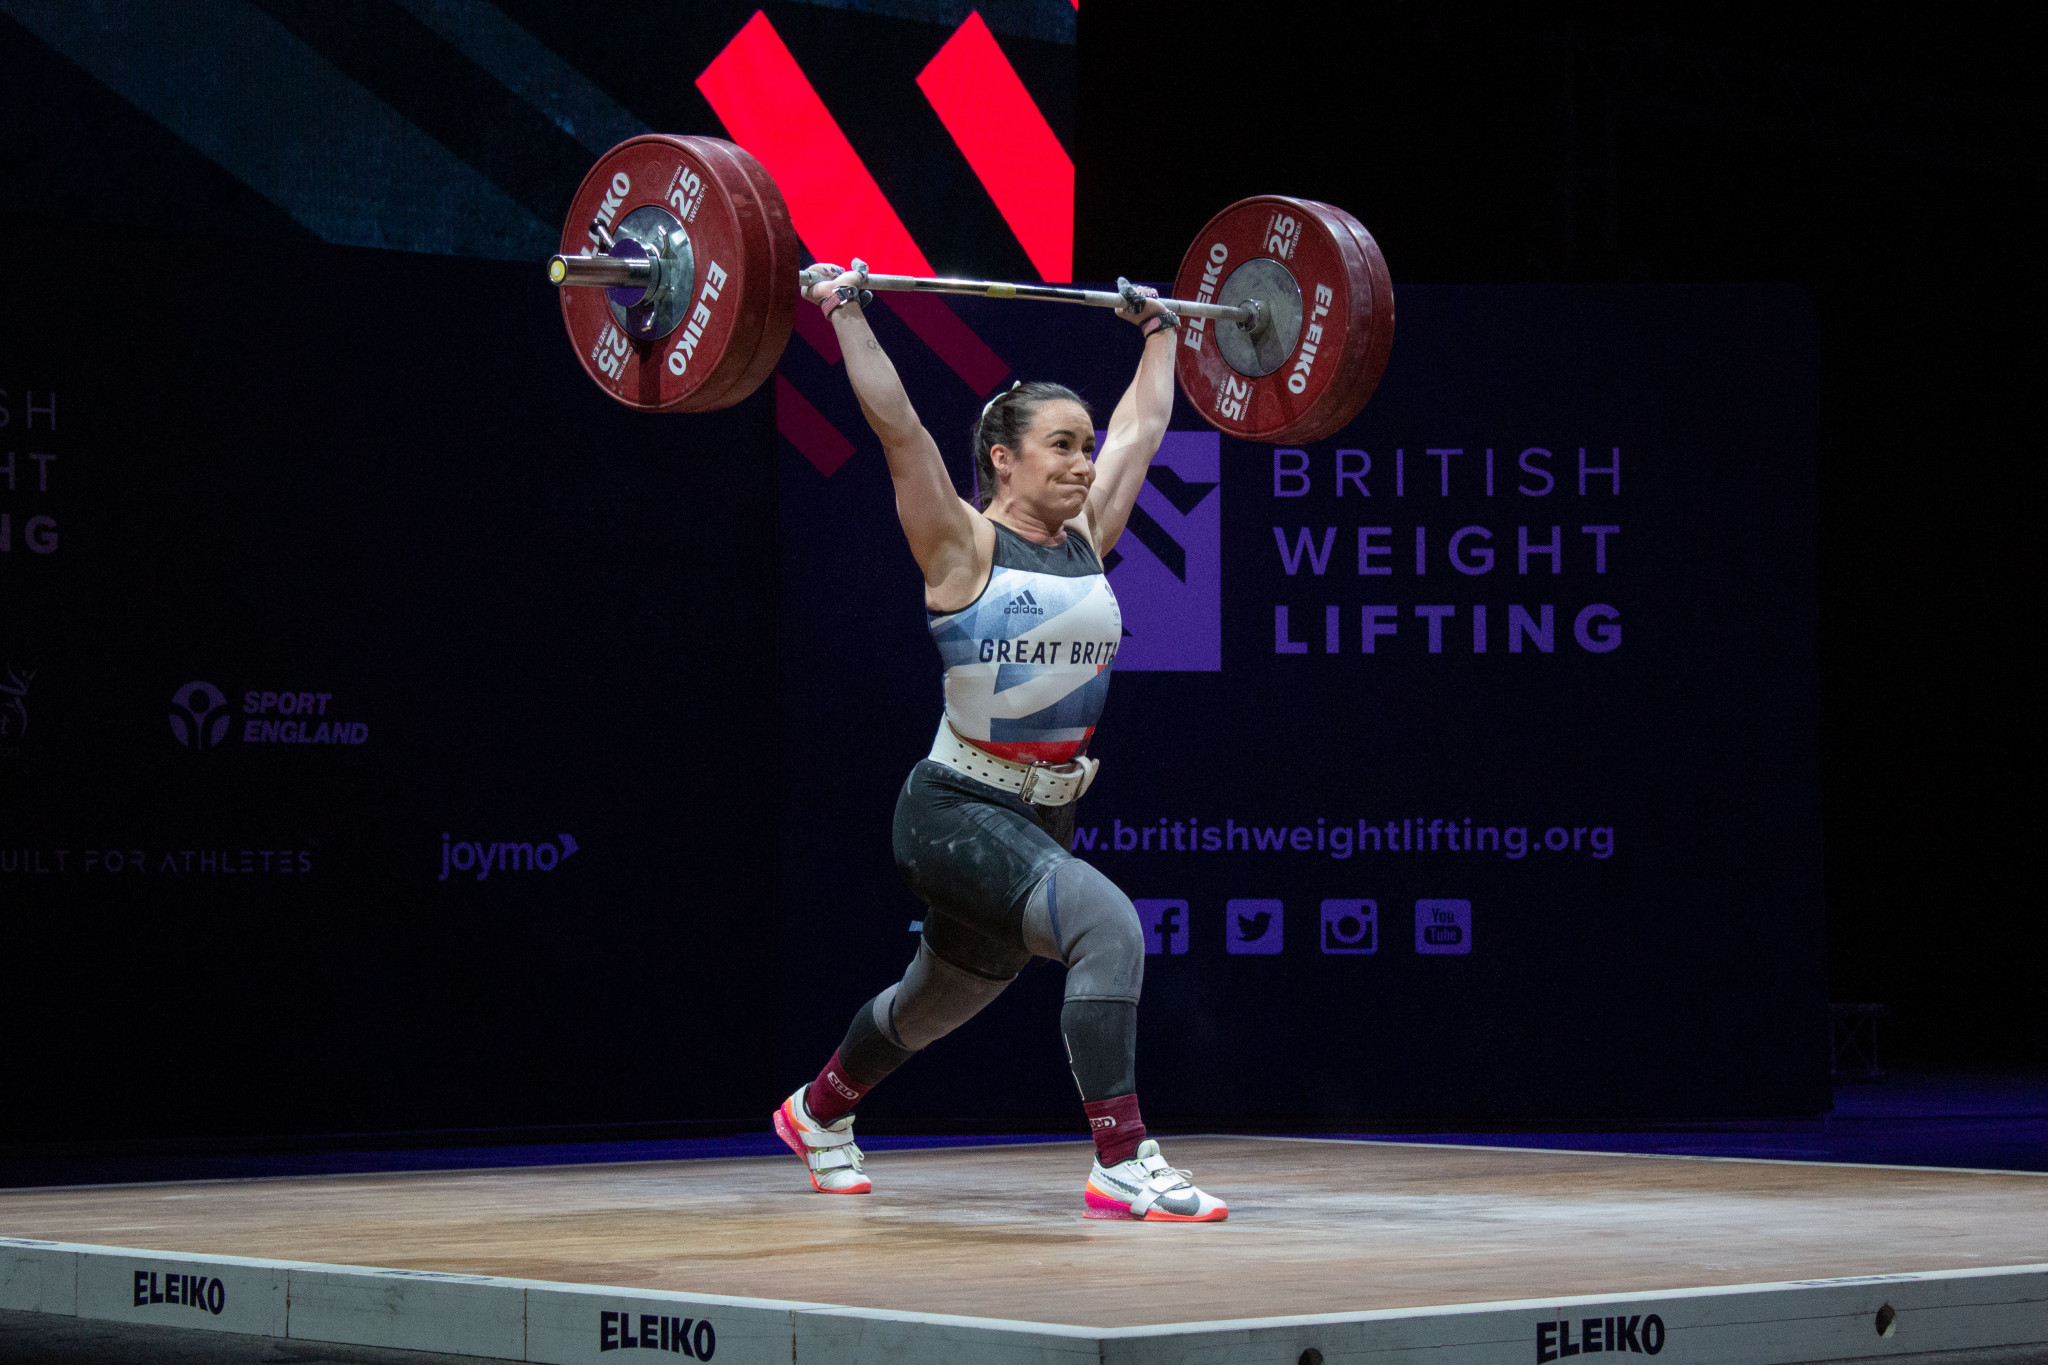 Sarah Davies moved up to 76kg, her heaviest weight yet ©British Weight Lifting